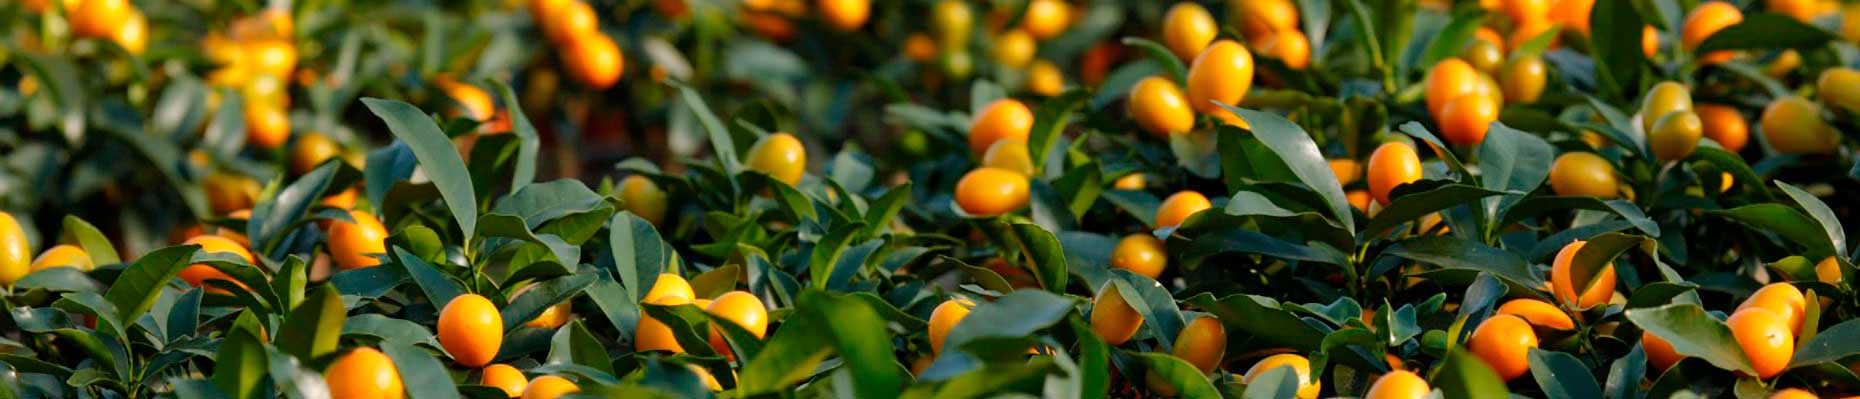 kumquat-agrumi-giambo-piante.jpg